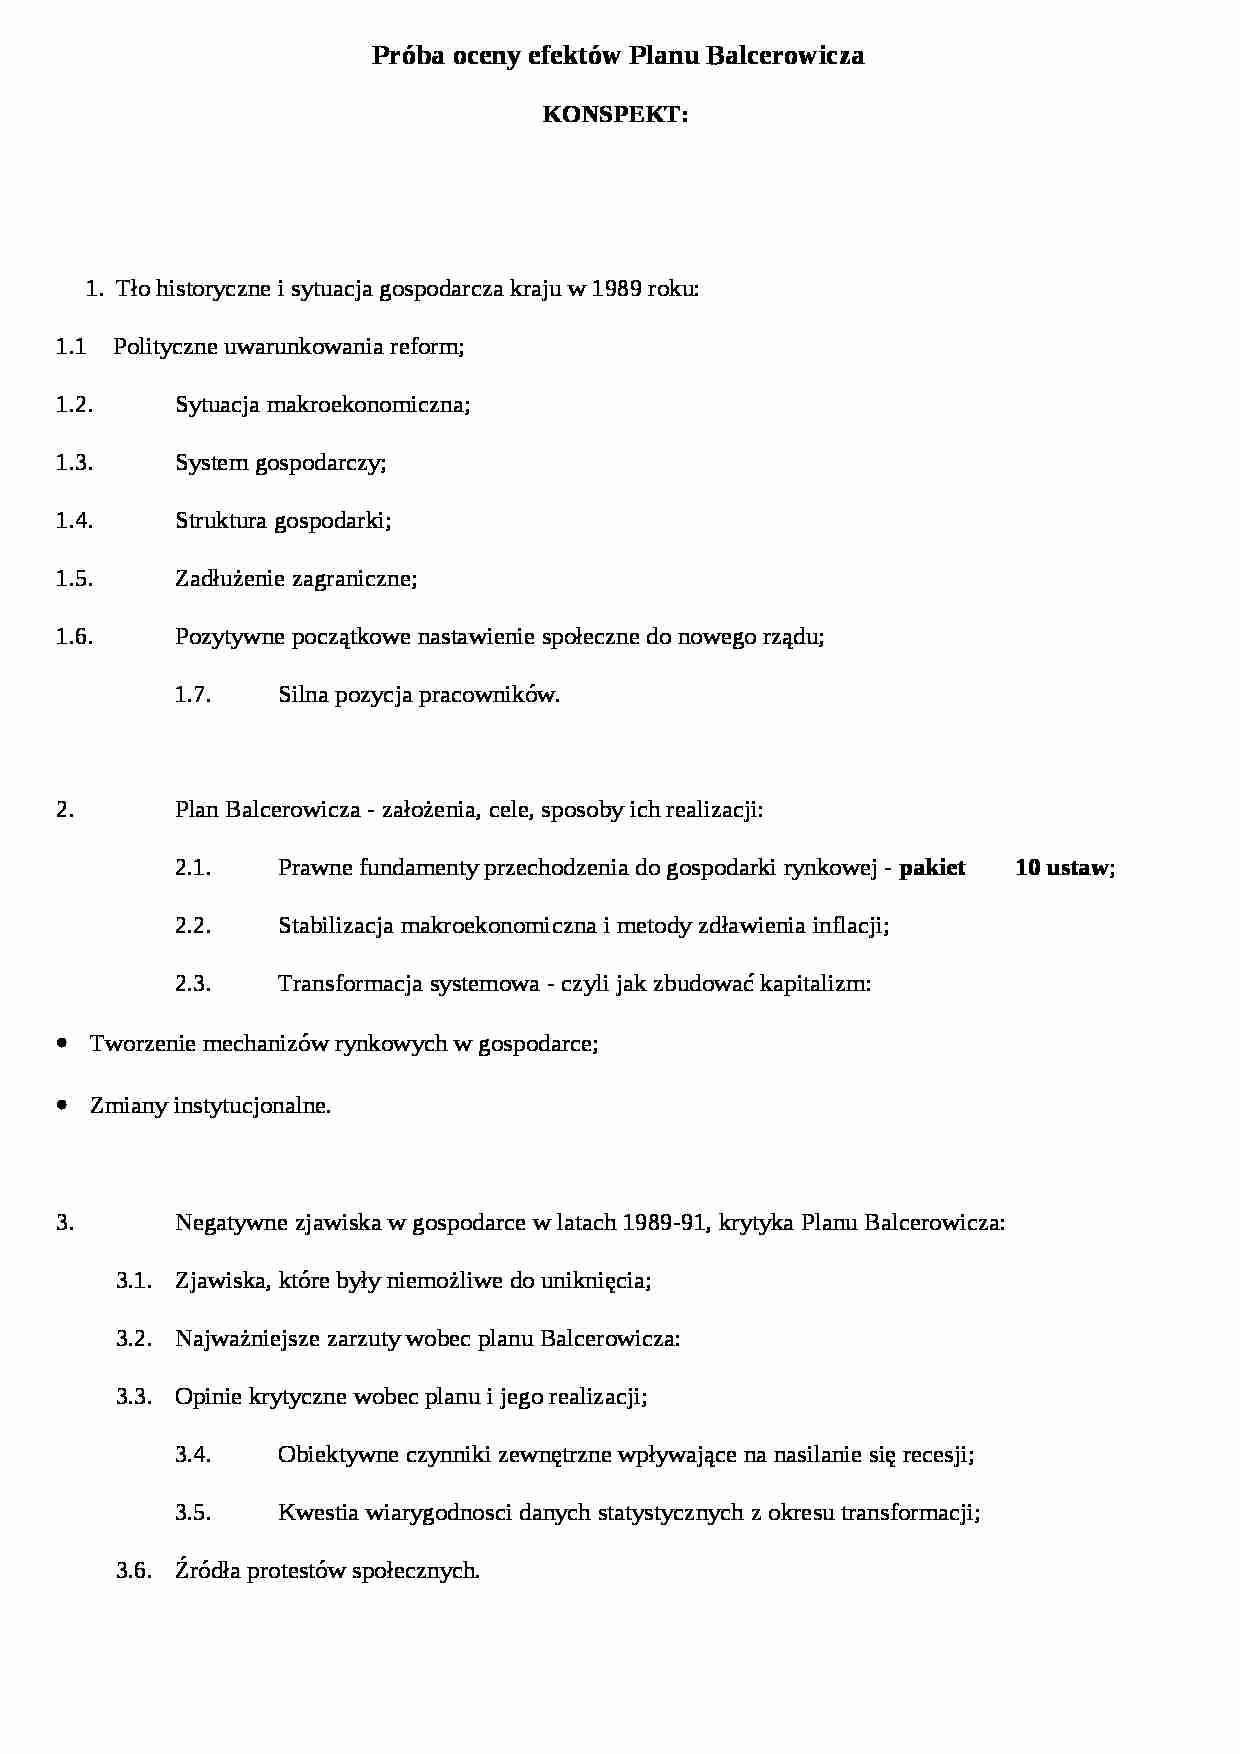 Próba oceny efektow Planu Balcerowicza- opracowanie - strona 1